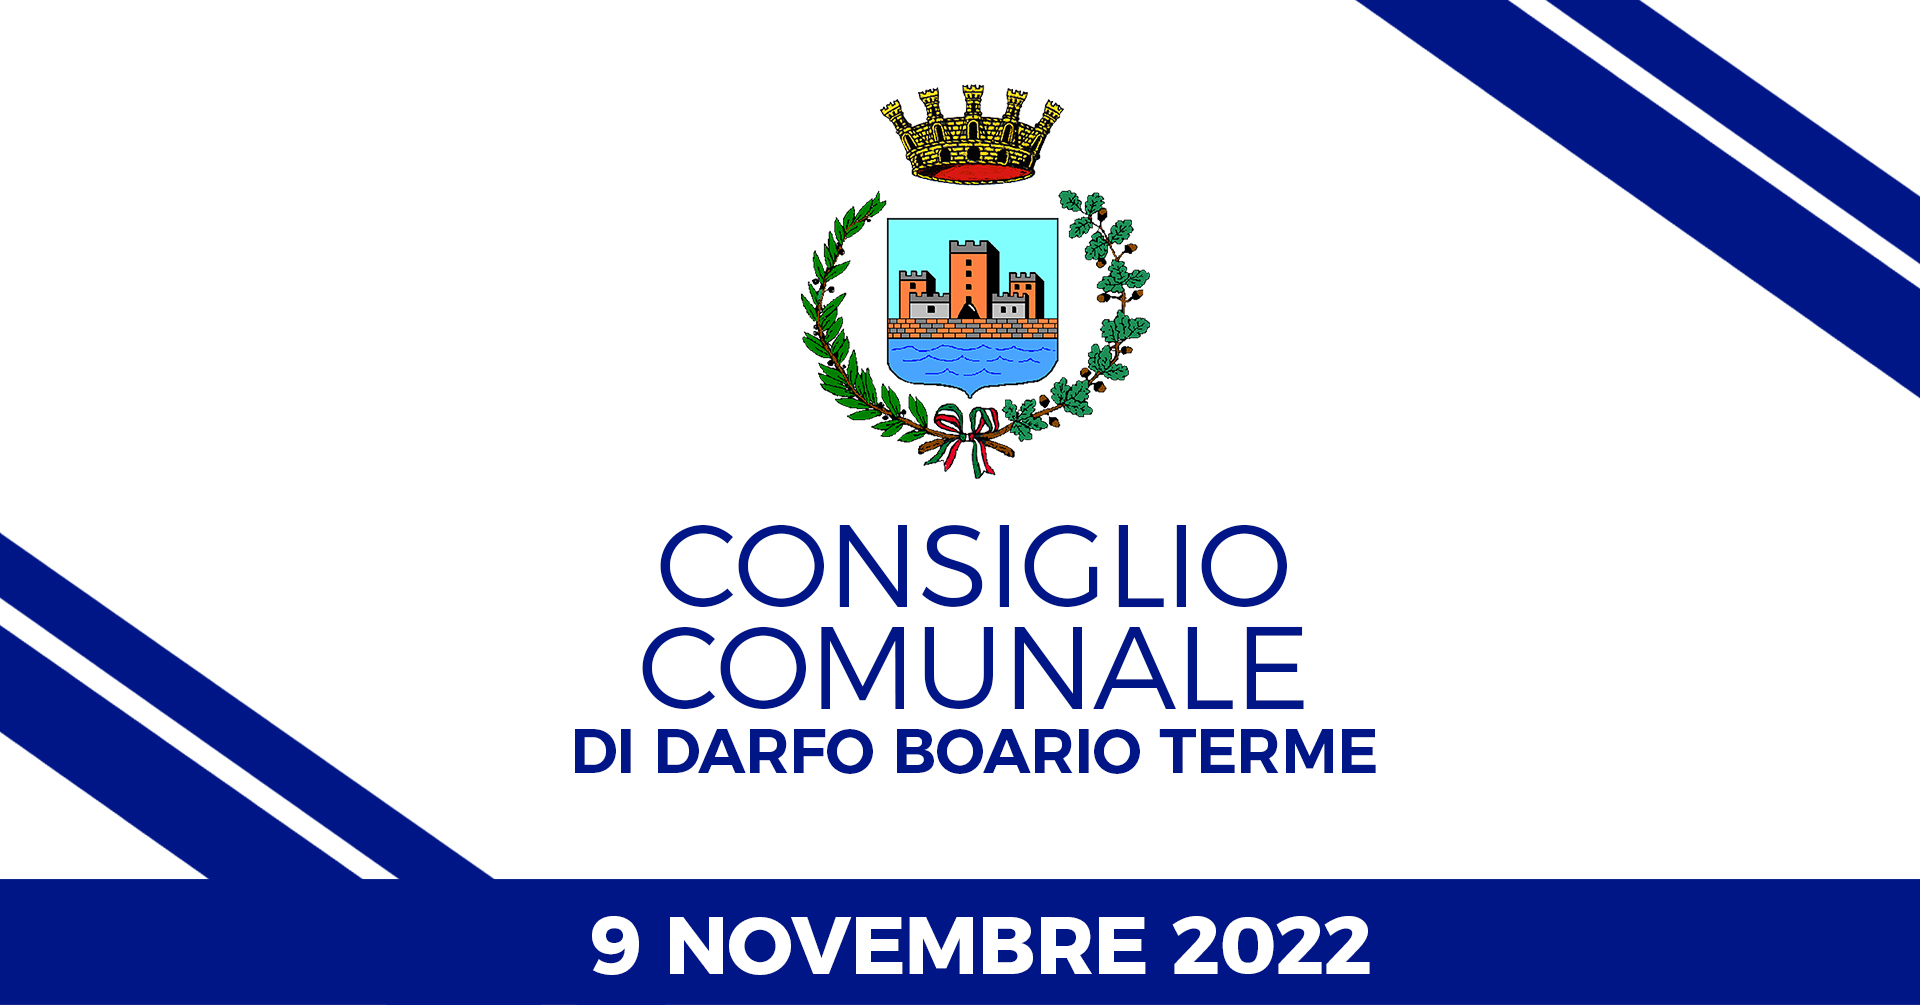 Consiglio Comunale di Darfo Boario Terme del 09 novembre 2022